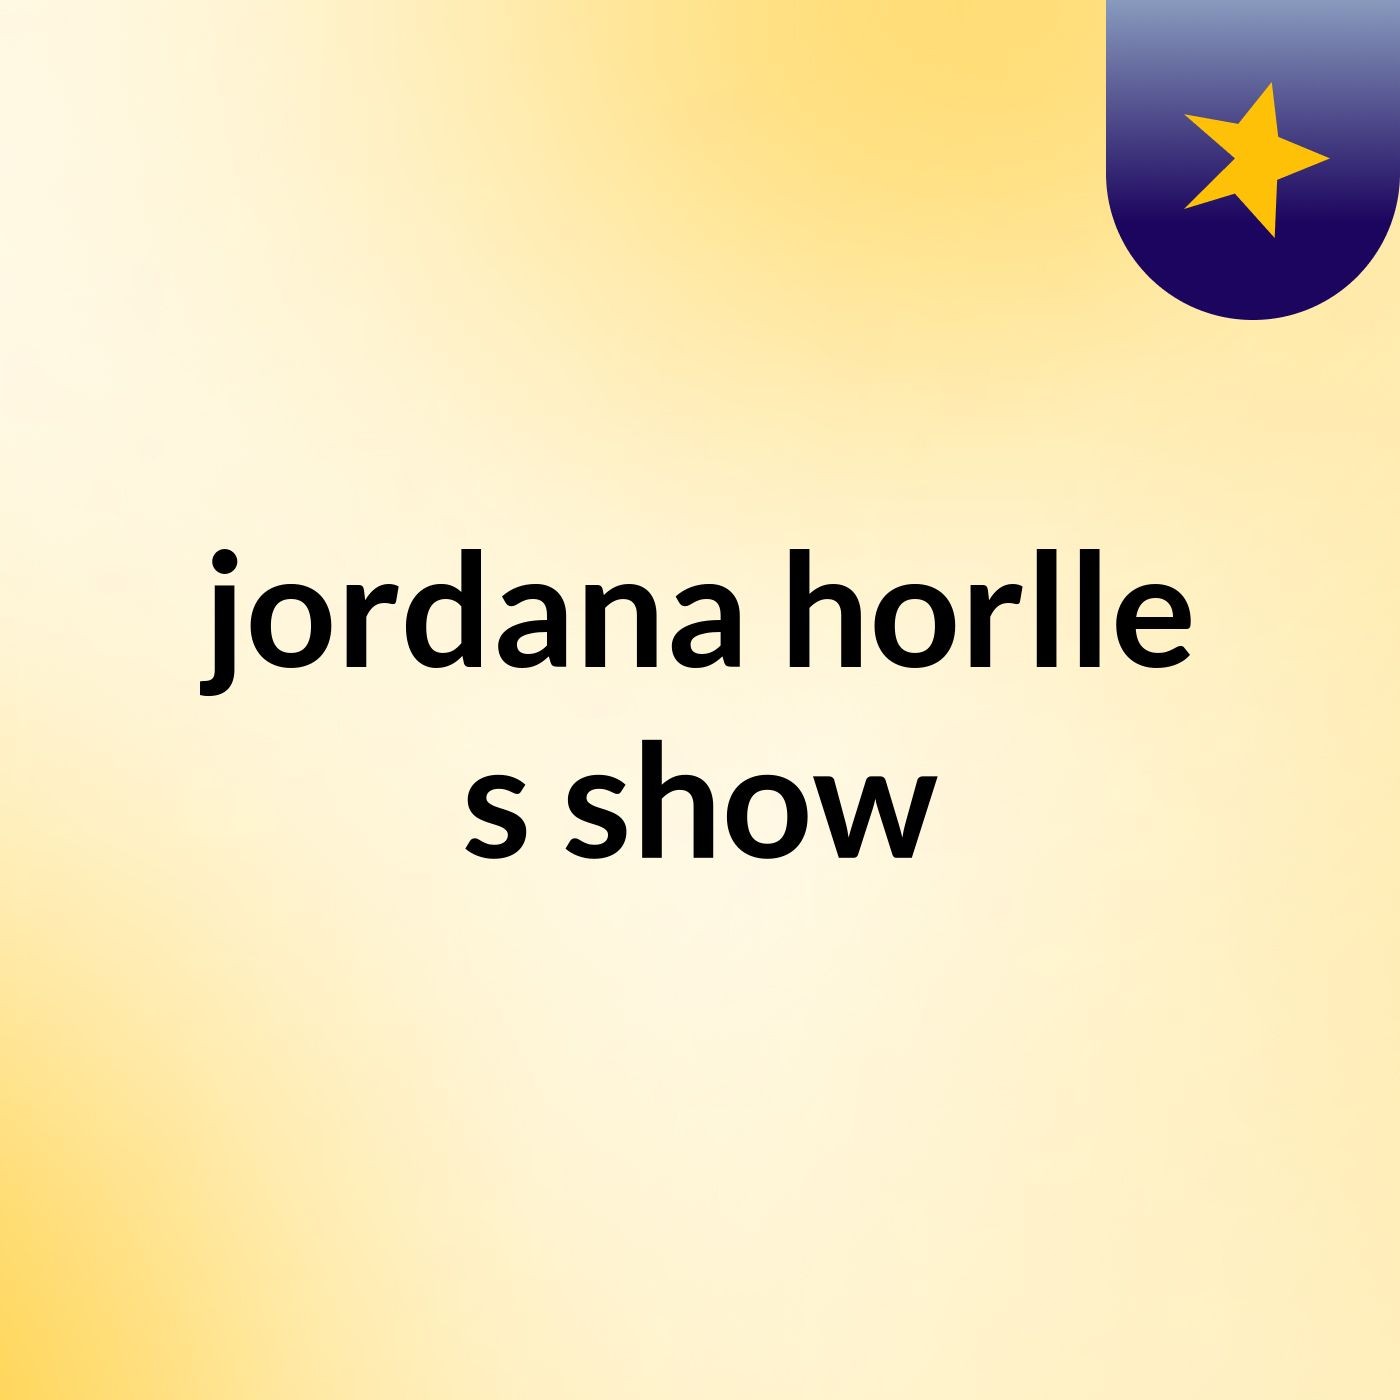 jordana horlle's show